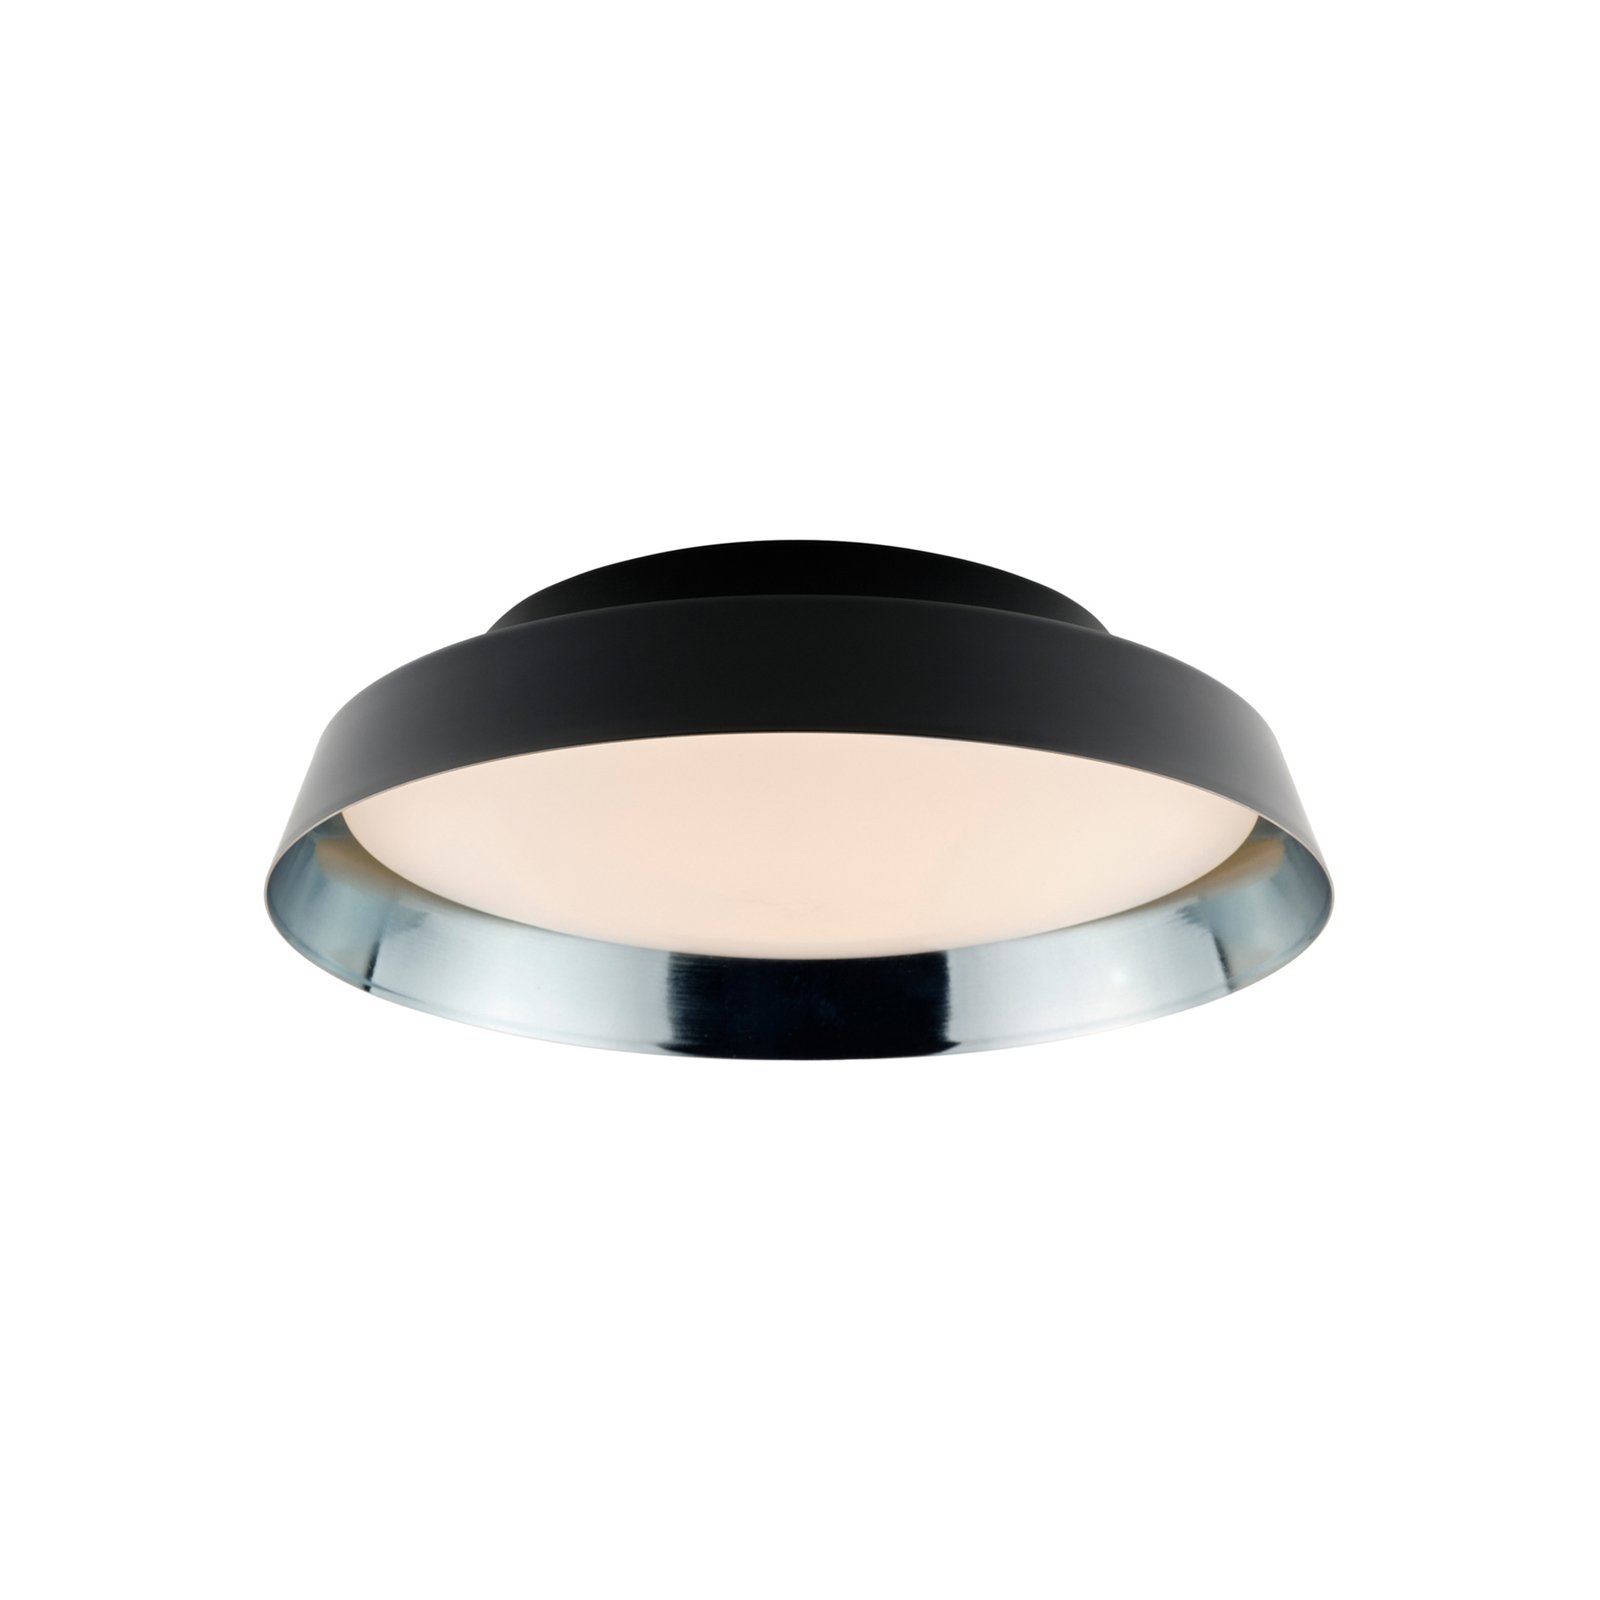 Boop! LED ceiling light Ø 54 cm black/blue-grey